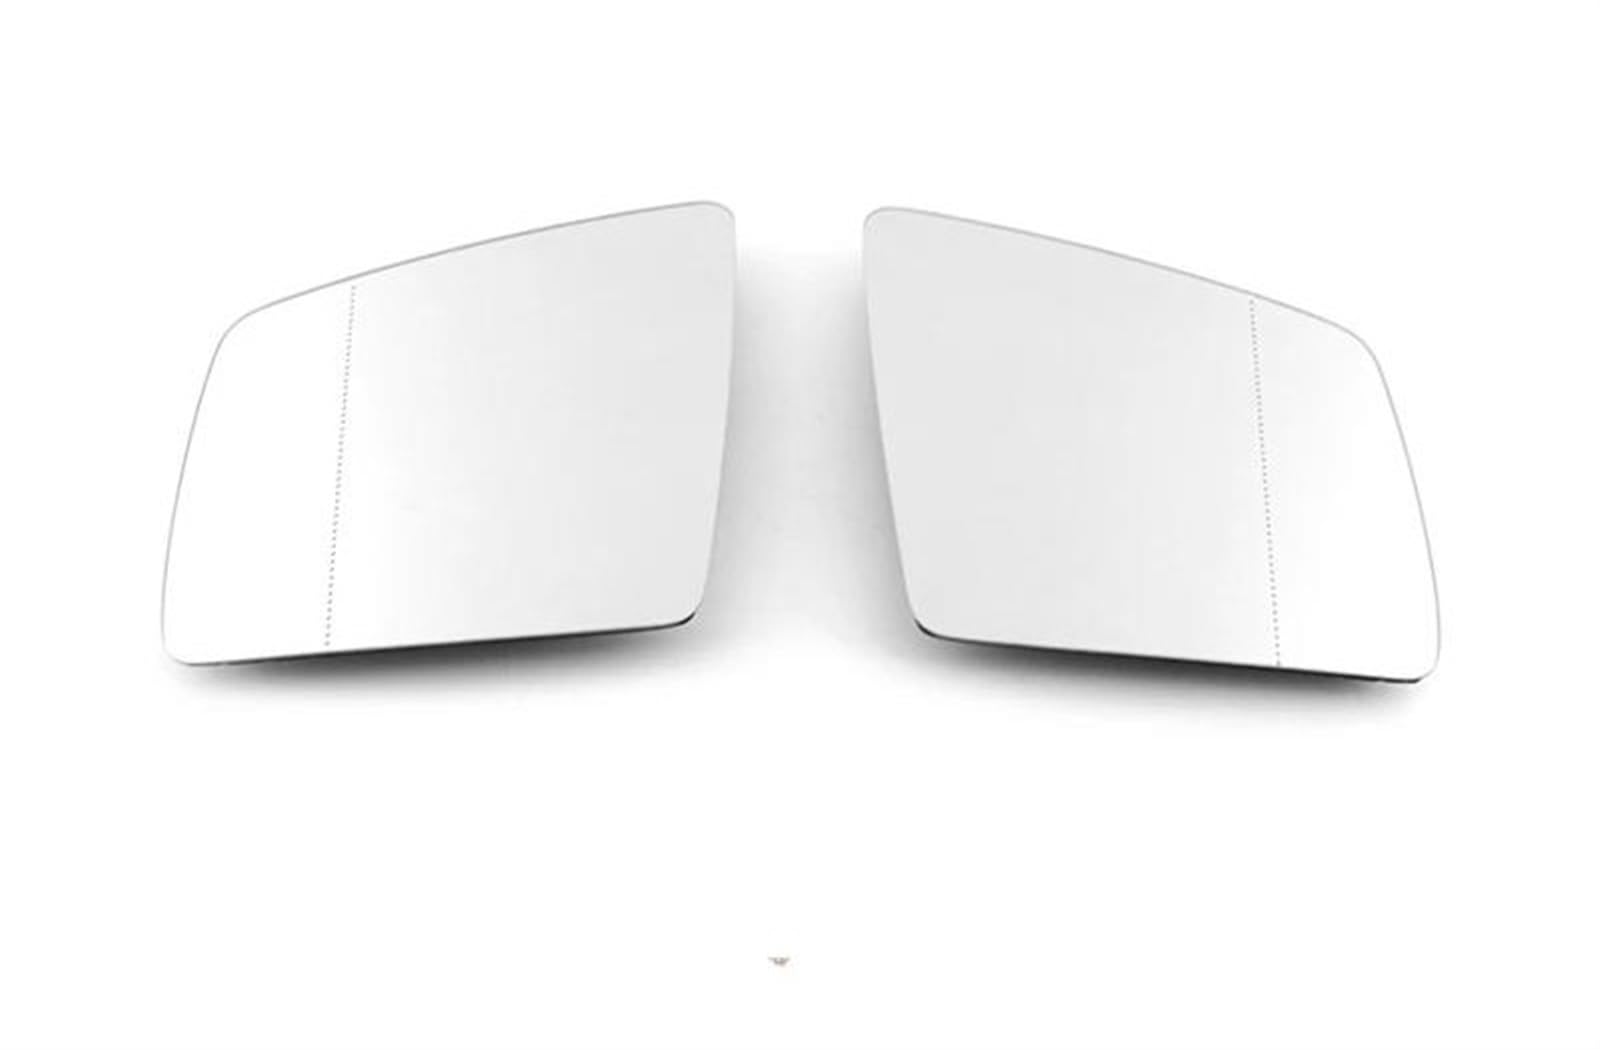 Umkehrlinse Beheizter Außenspiegelglas Für Die Linke Und Rechte Türseite, Rückspiegelplatte Für Mercedes Für Benz GL ML GLE-Klasse W164 W166 C292 Ersatzspiegelglas(Left Right) von DZSYANJIASM